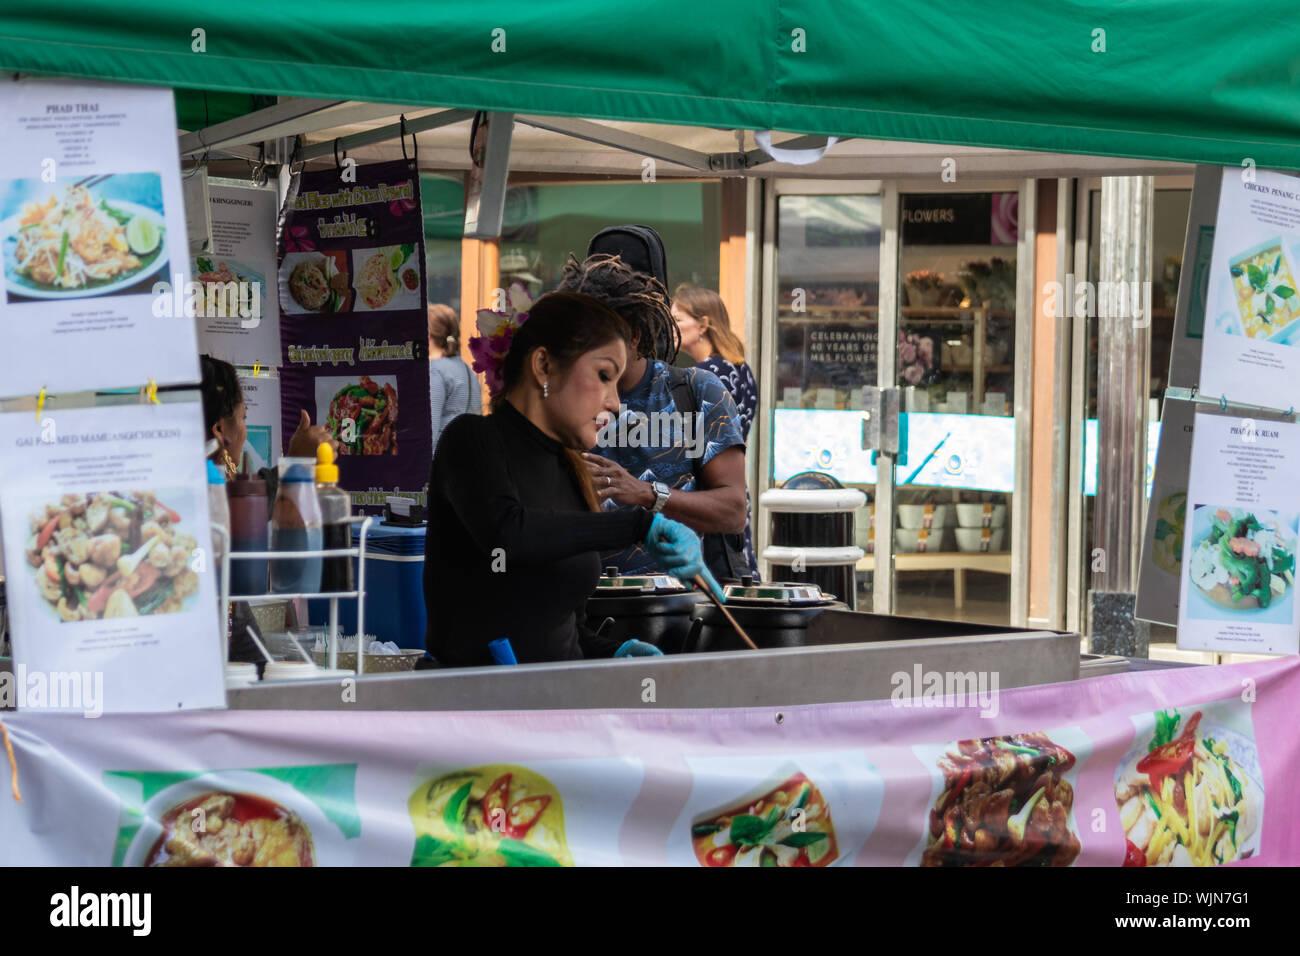 Winchester, Hampshire, Royaume-Uni, l'une cuisine Thai dame street food at a market stall pour vente au public Banque D'Images